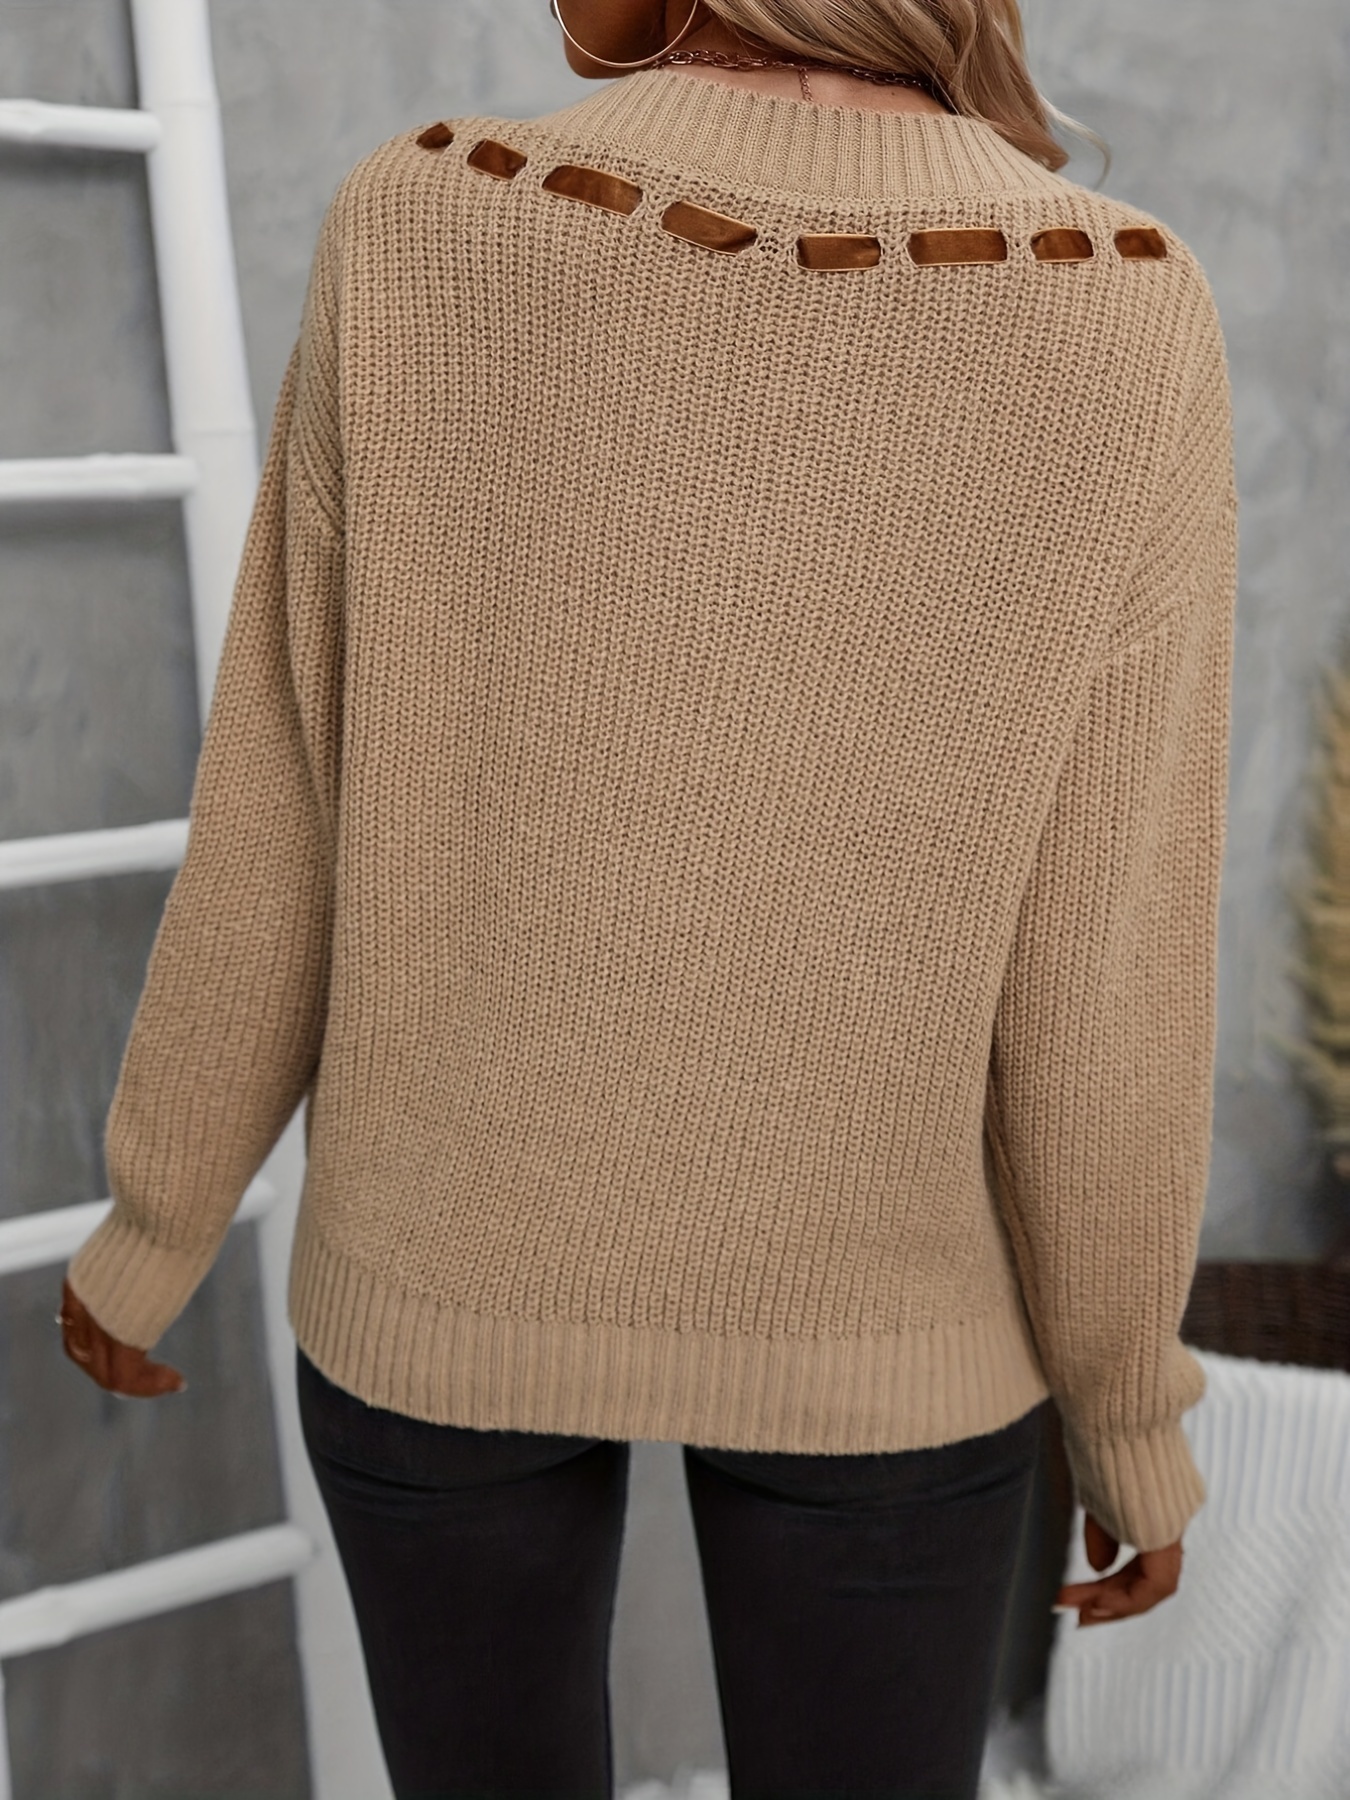 Comprar Jersey largo de otoño e invierno para mujer, suéter con